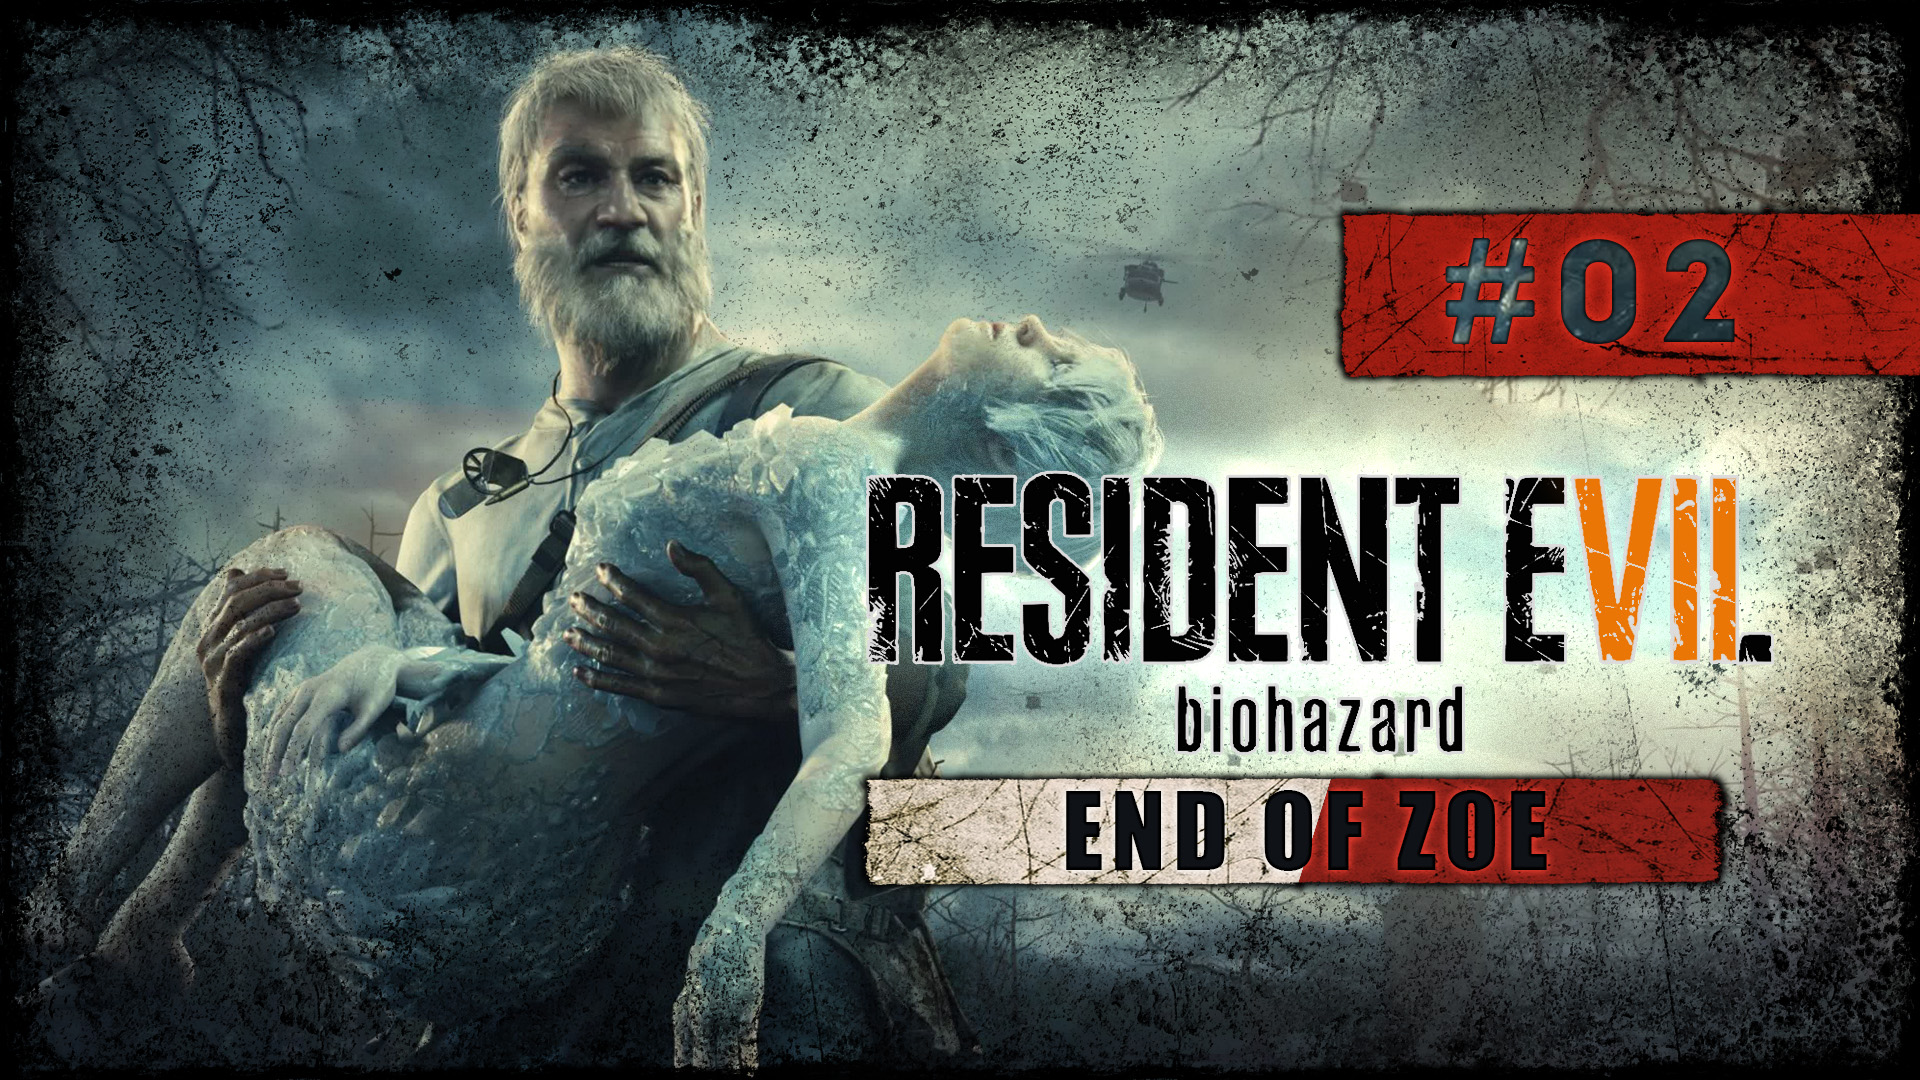 Прохождение Resident Evil 7 ► End of Zoe DLC ► Финальное сражение с братом #2 [Русская озвучка]